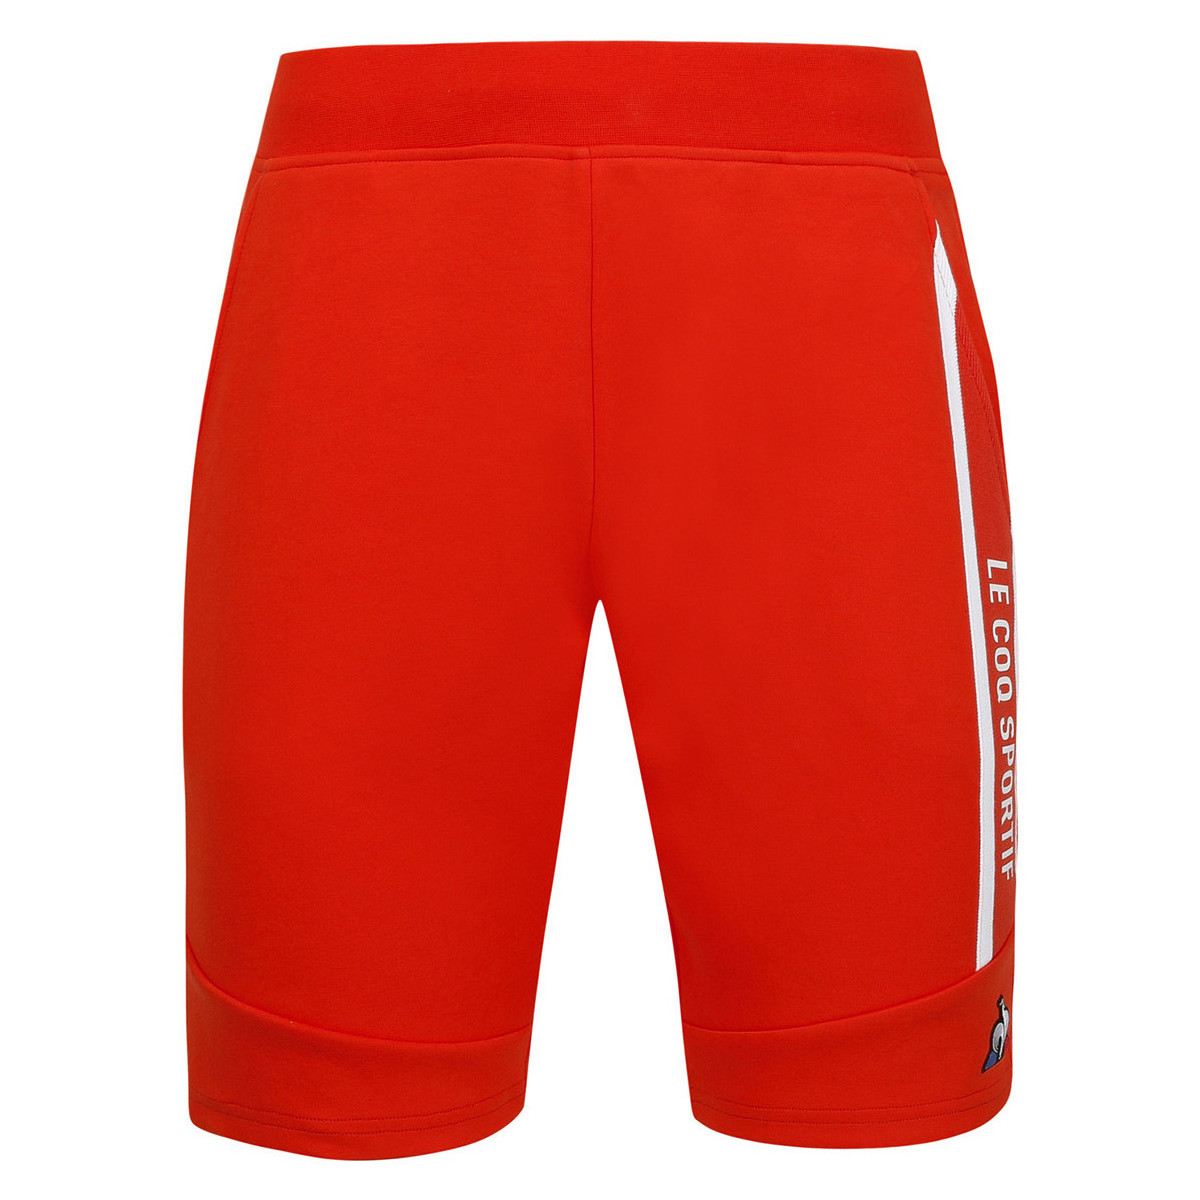 Textiel Heren Korte broeken / Bermuda's Le Coq Sportif Saison 1 Short Regular N°2 Orange